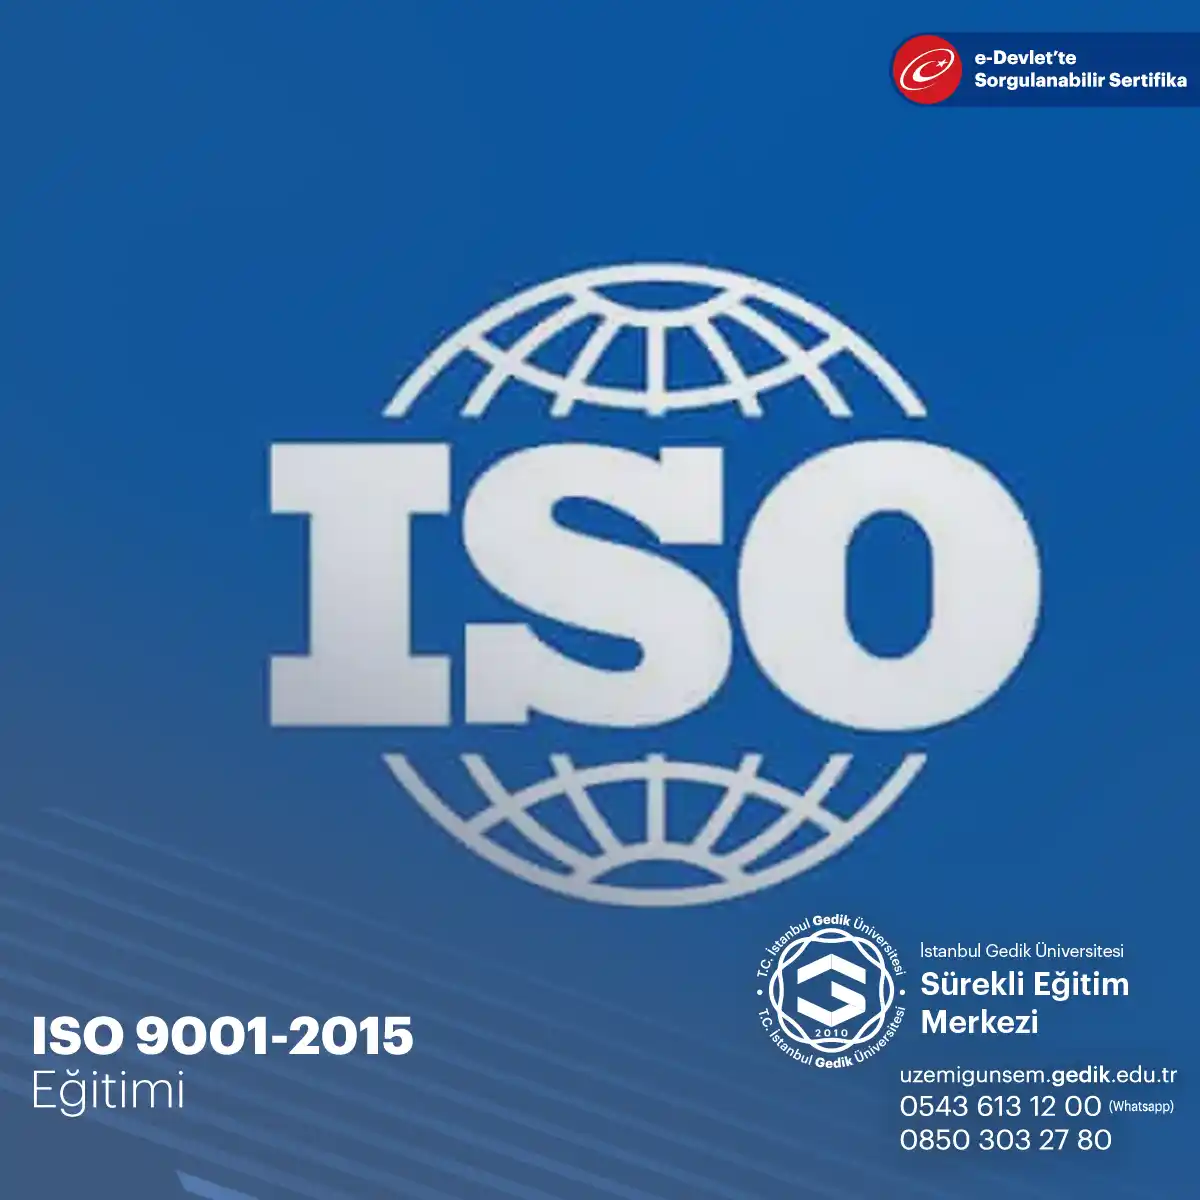 ISO 9001-2015 Sertifikalı Eğitim Programı